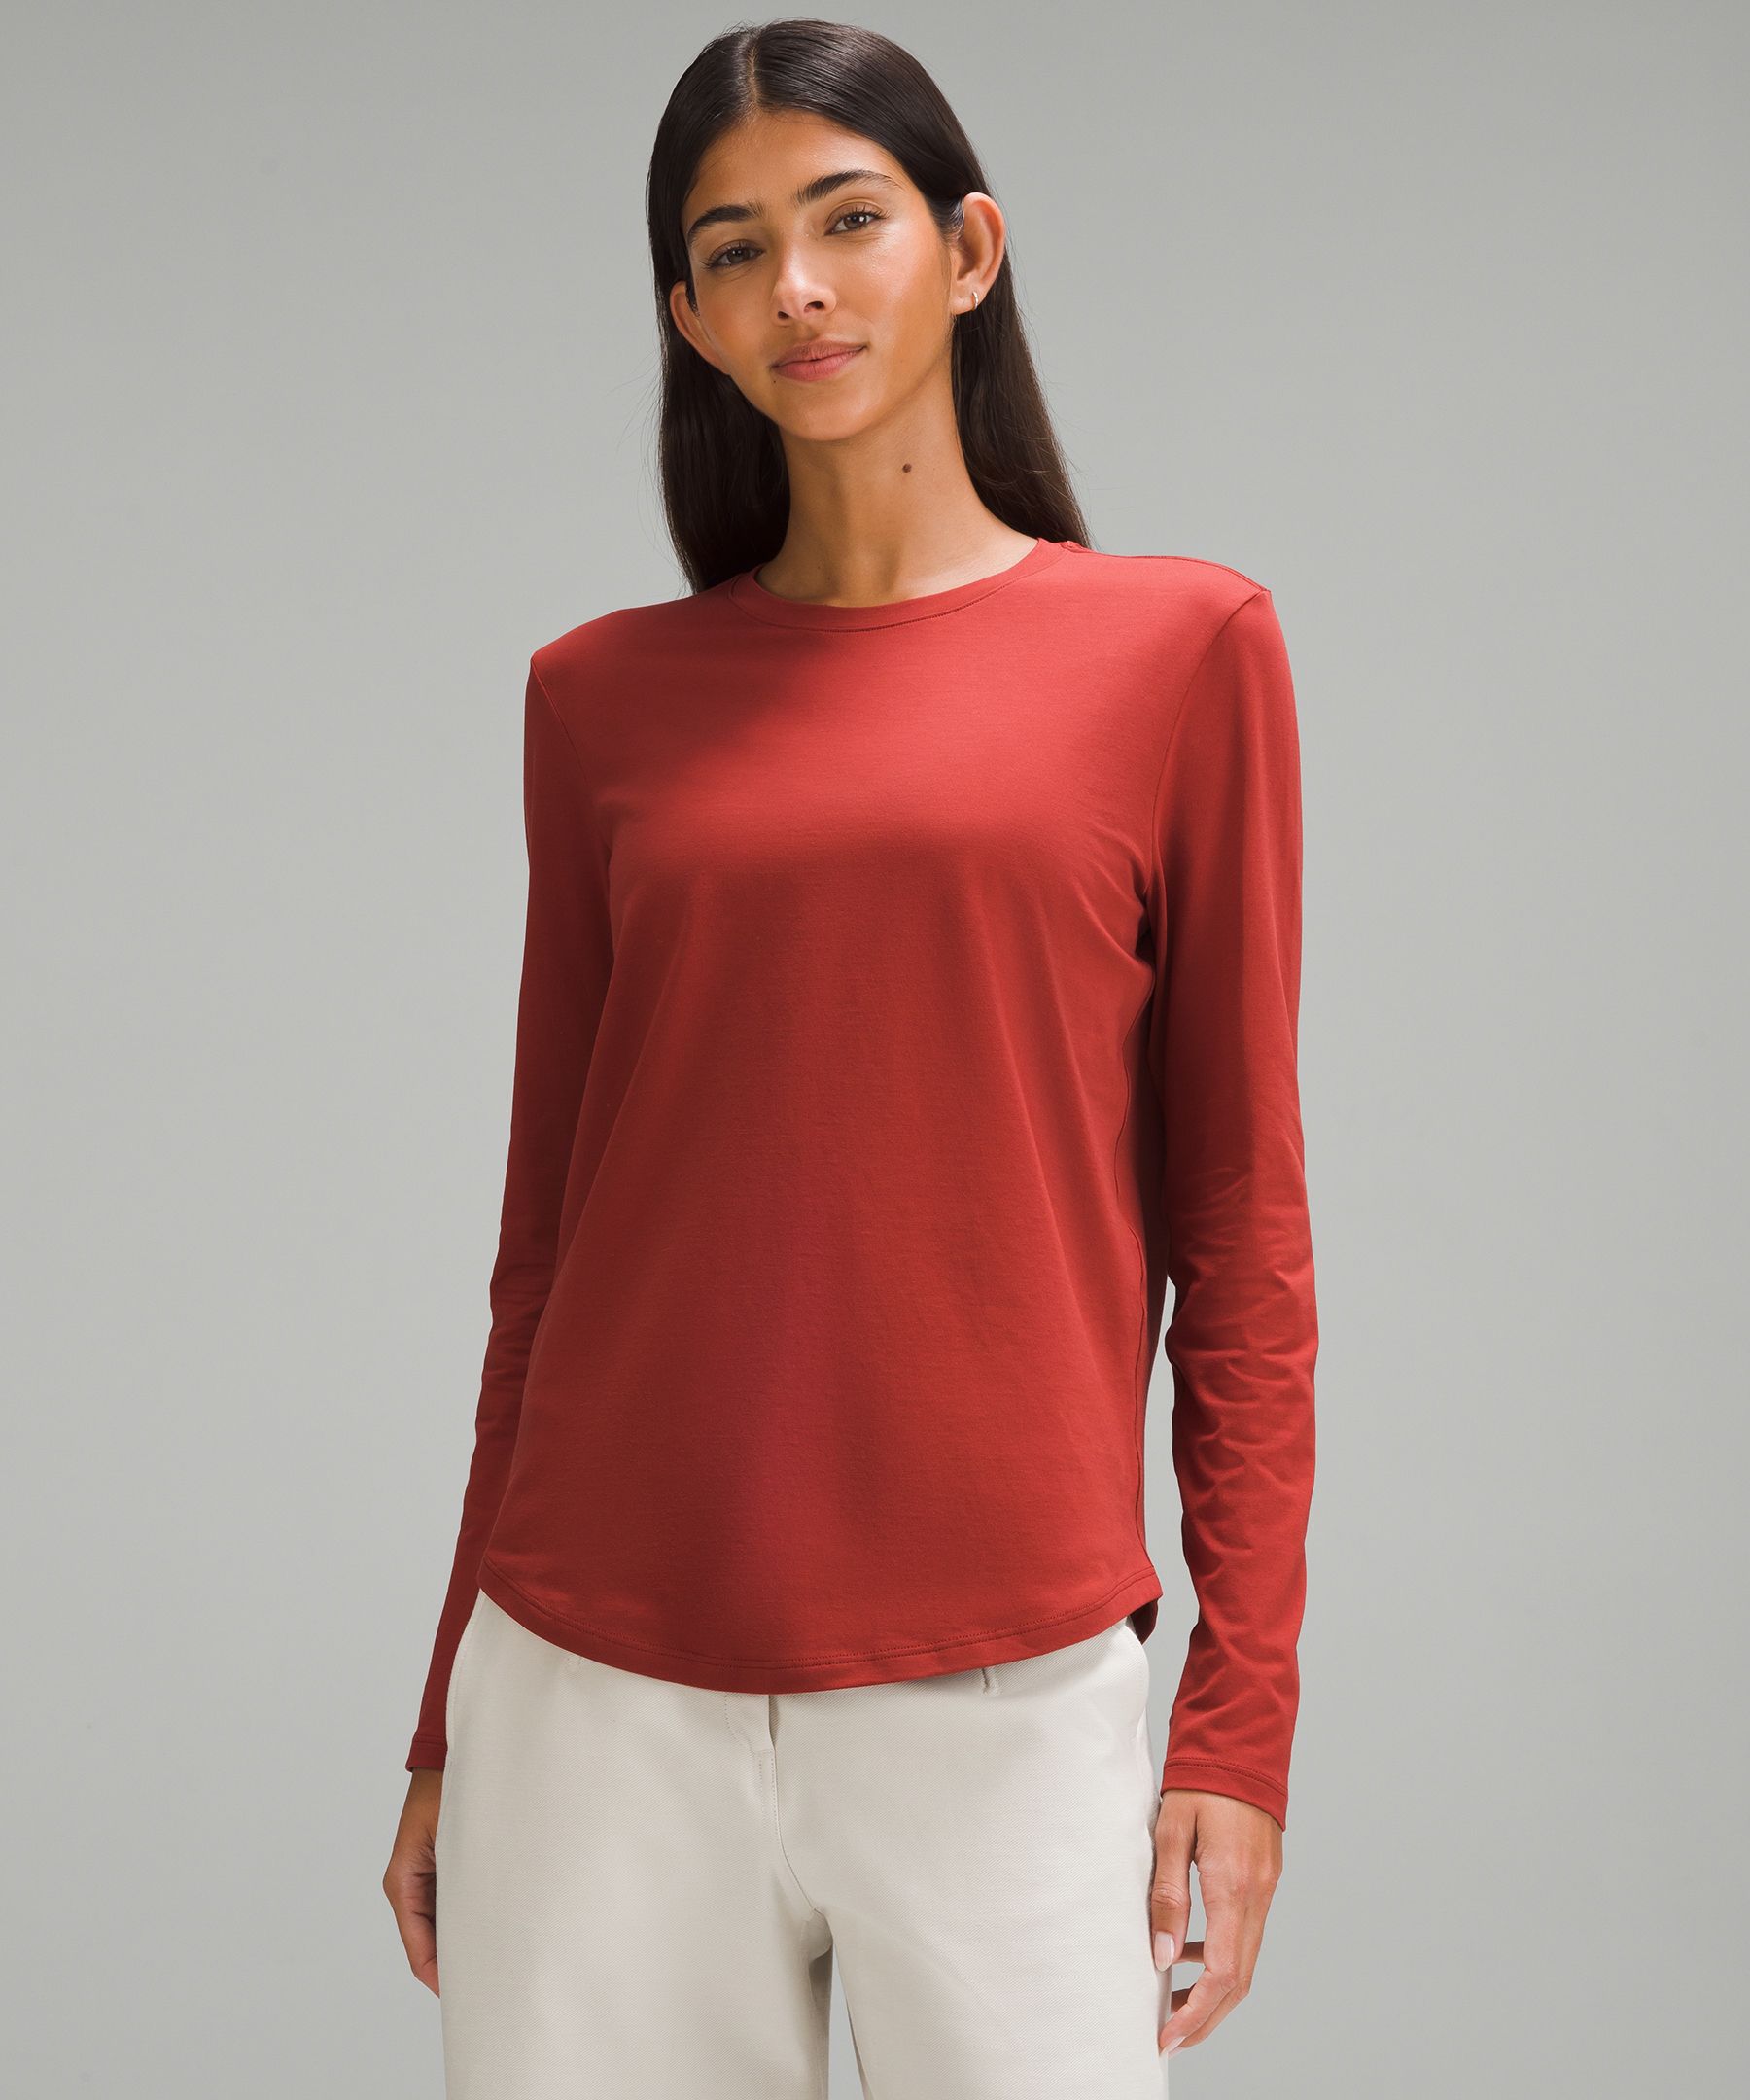 Lululemon Love Long-Sleeve Shirt - Grey/White - Size 8 Pima Cotton Fabric